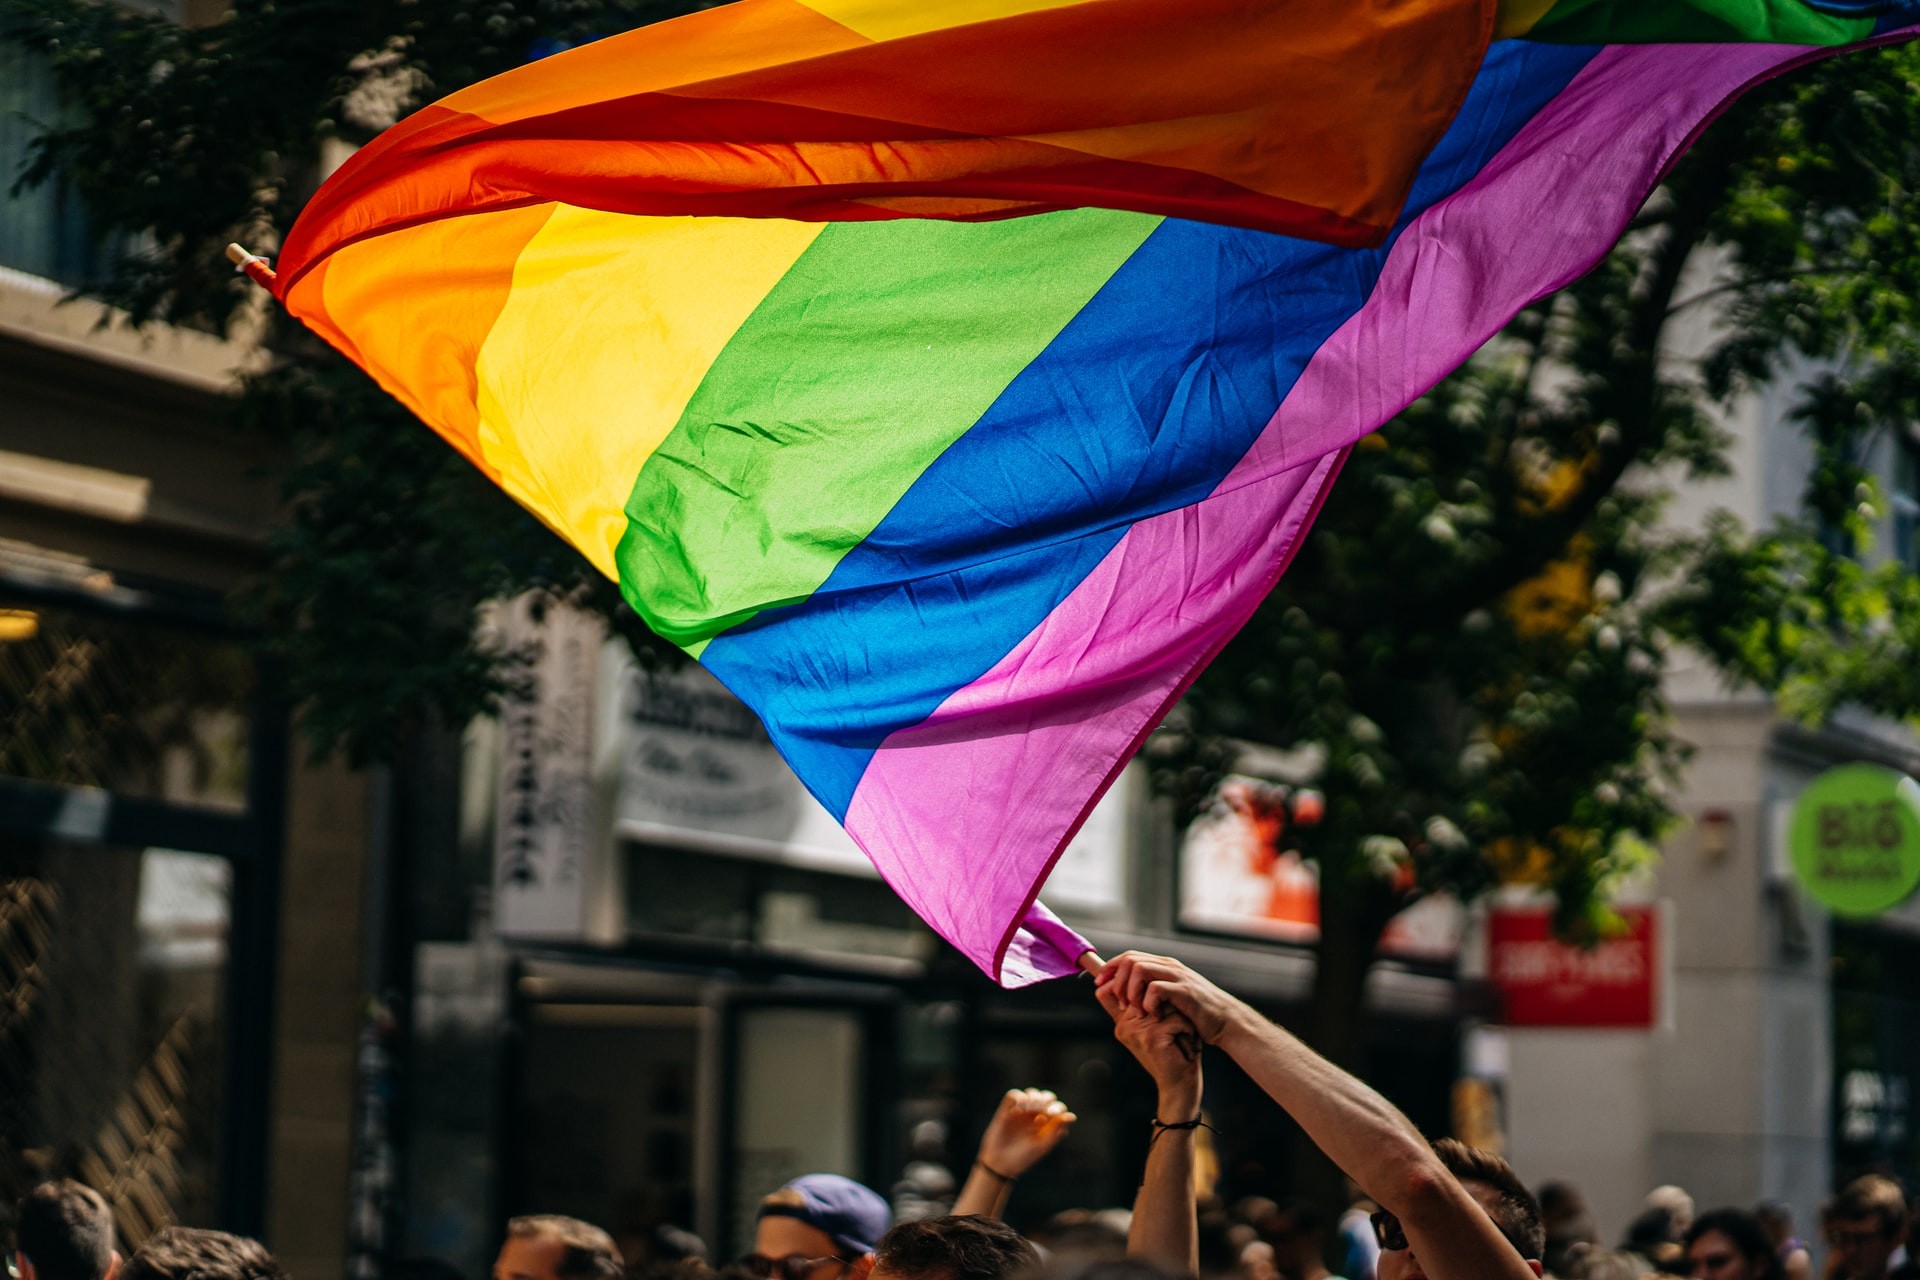 Com a presença de especialistas do Canadá, França, Chile, Argentina e Brasil, fórum propõe discussões sobre os direitos LGBTQ2+ (Foto: Raphael Renter / Unsplash / Creative Commons)